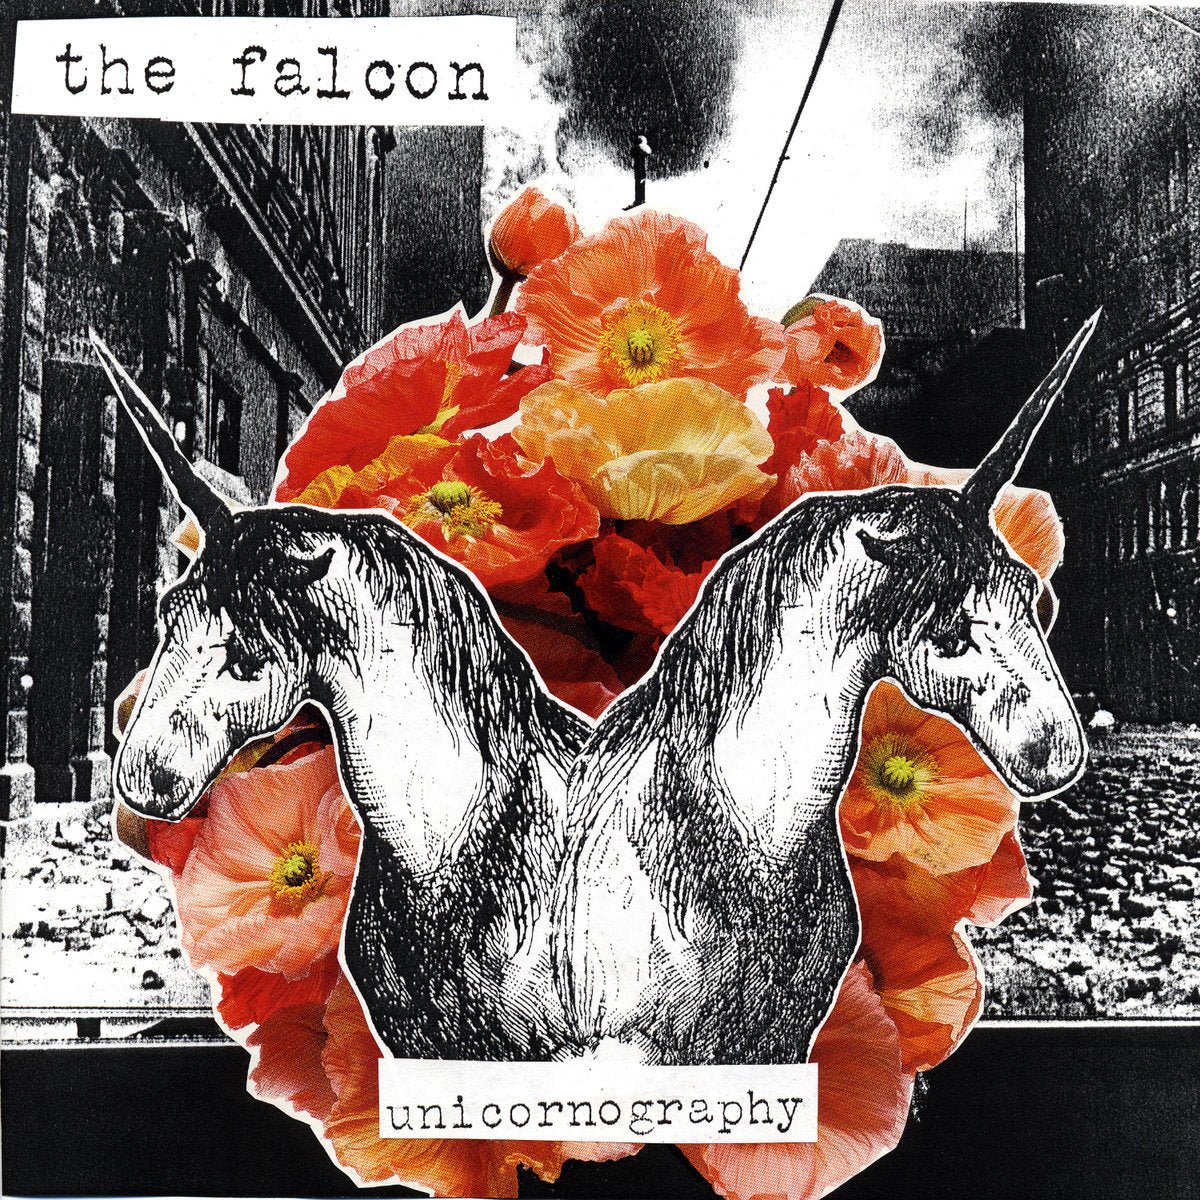 The Falcon - Unicornography LP - Vinyl - Red Scare